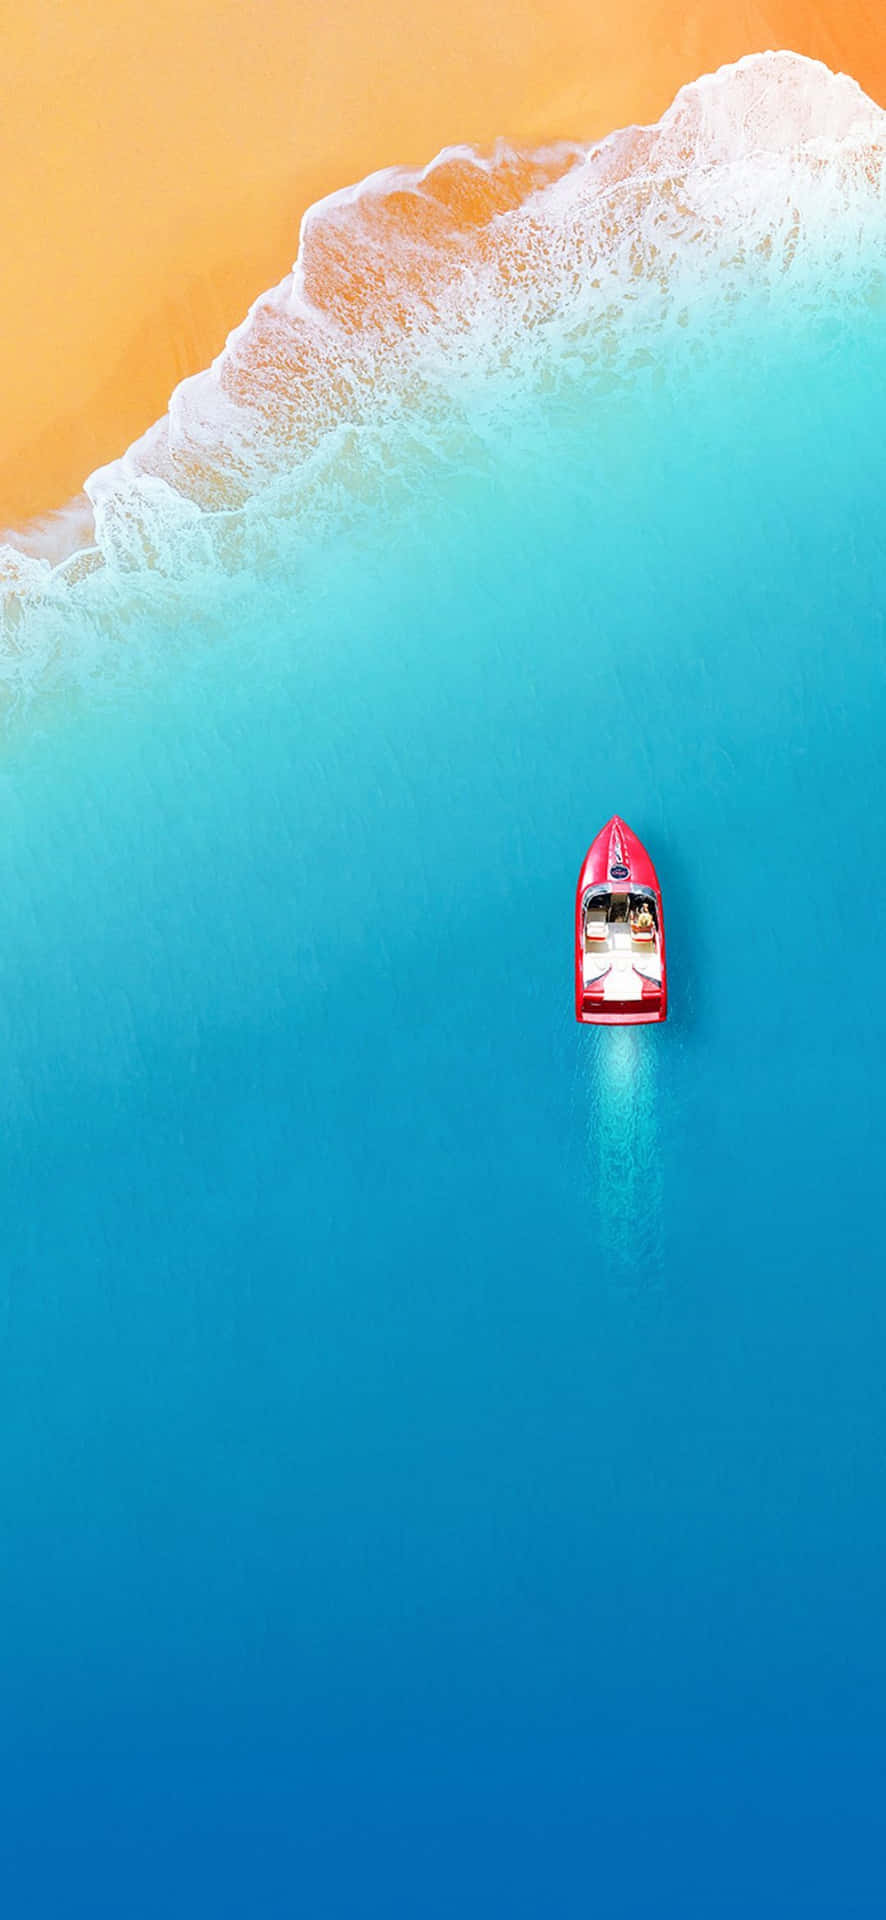 Minimaleiphone X: Motoscafo Rosso In Velocità Sul Mare Sfondo